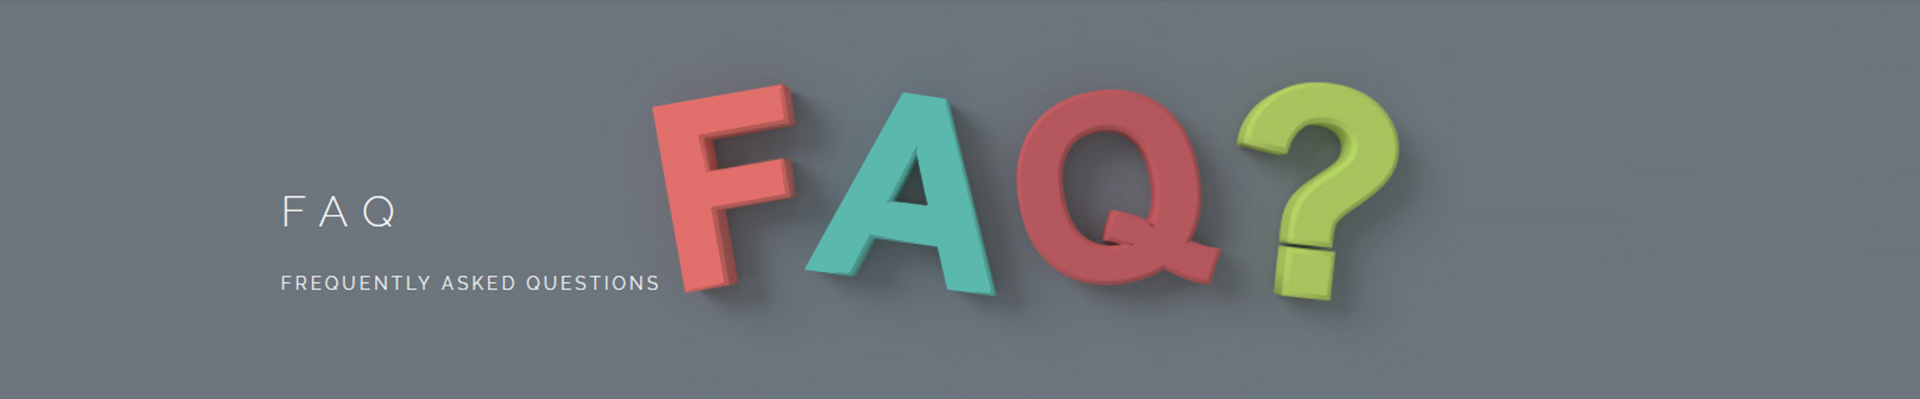 FAQs-baner